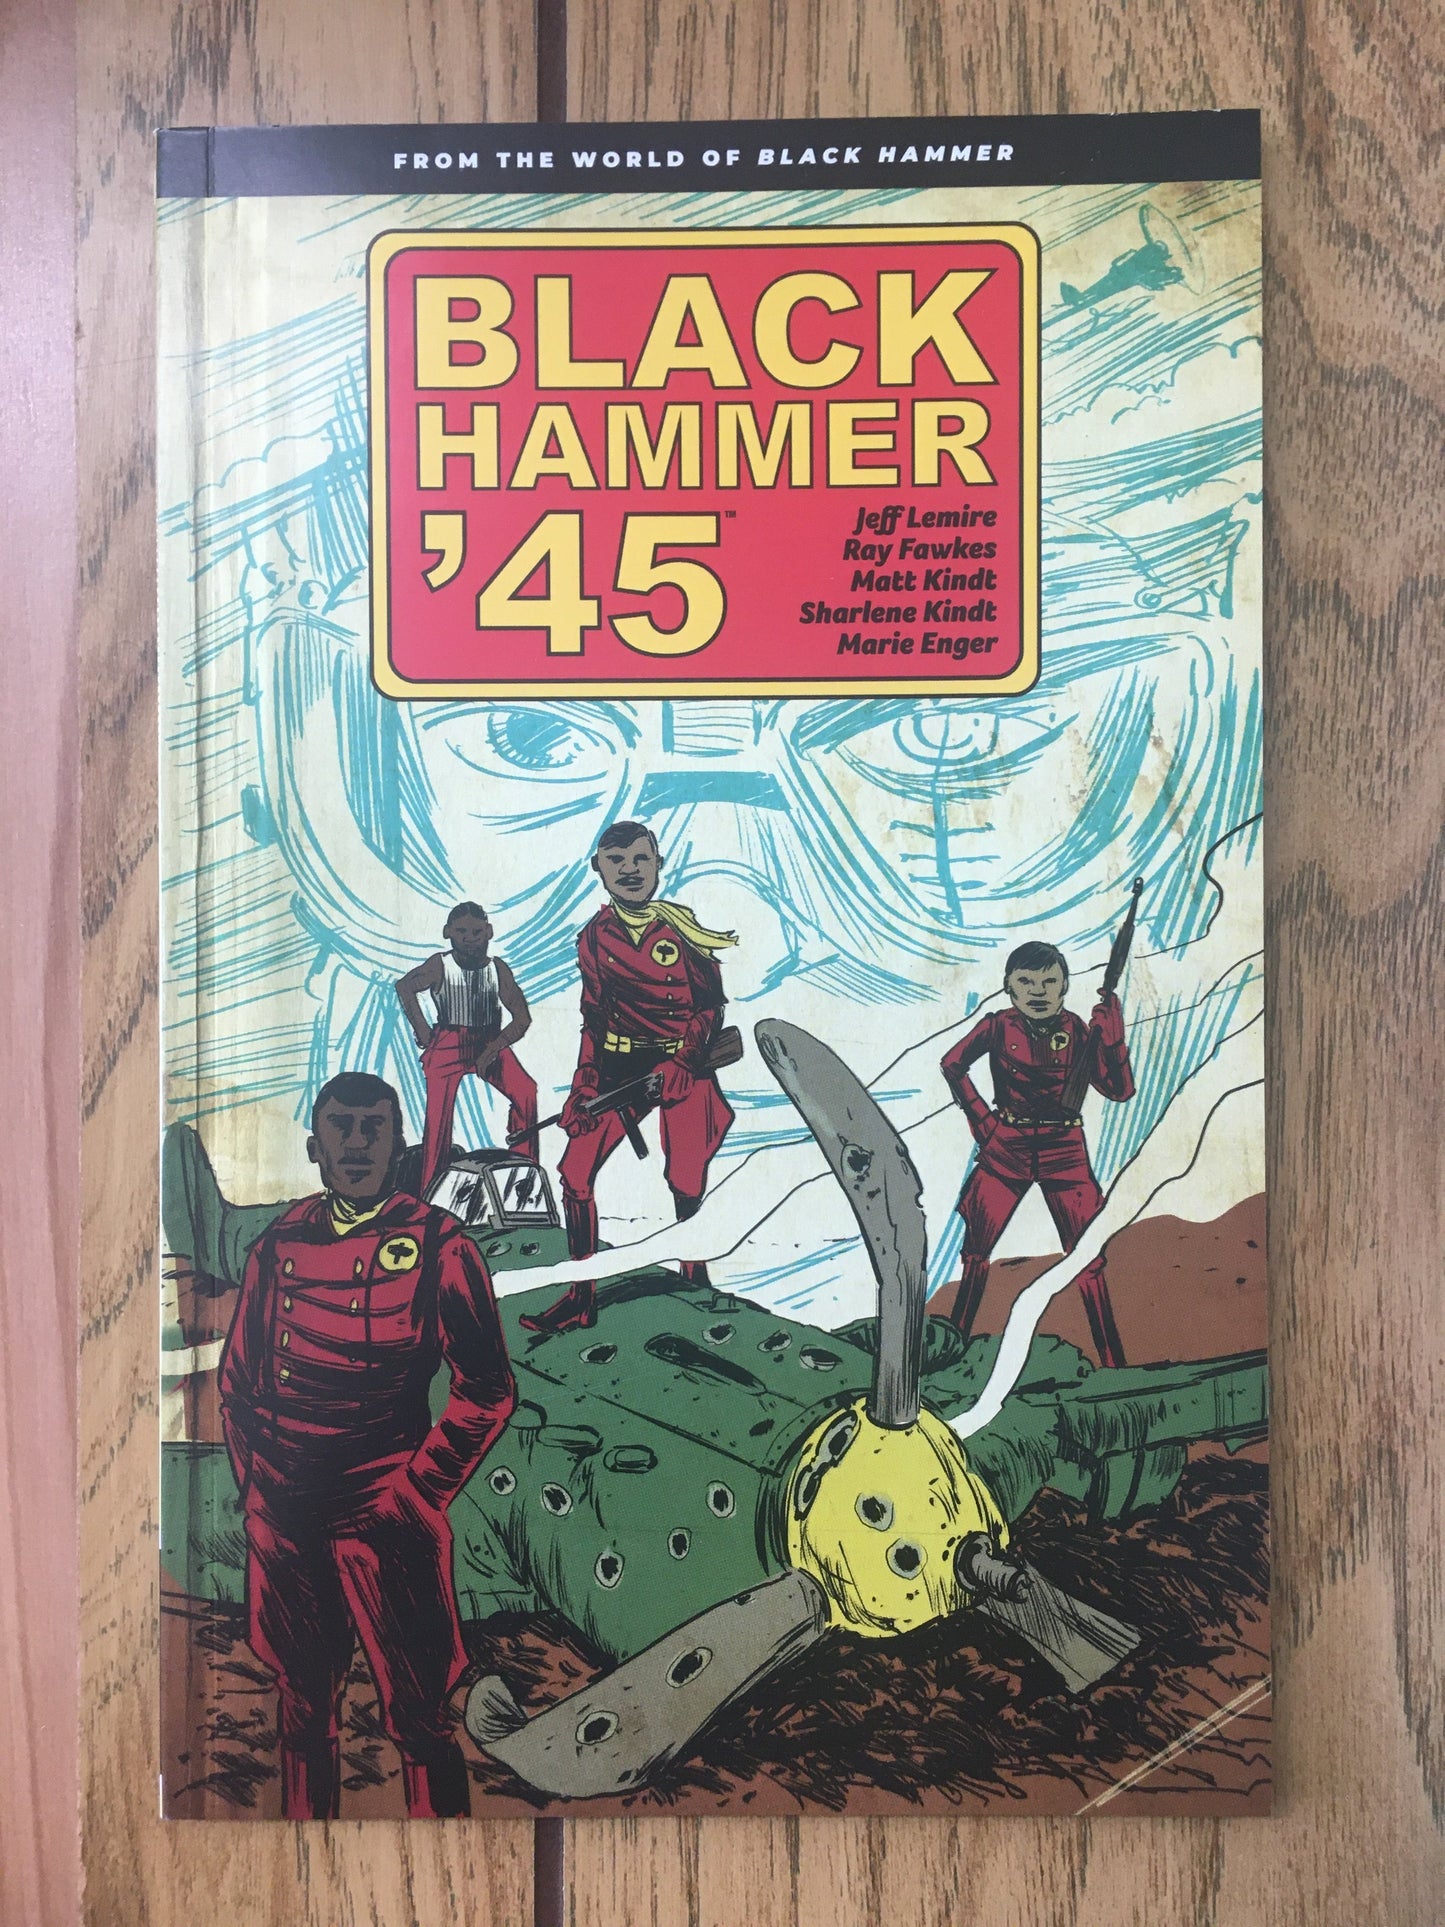 Black Hammer '45